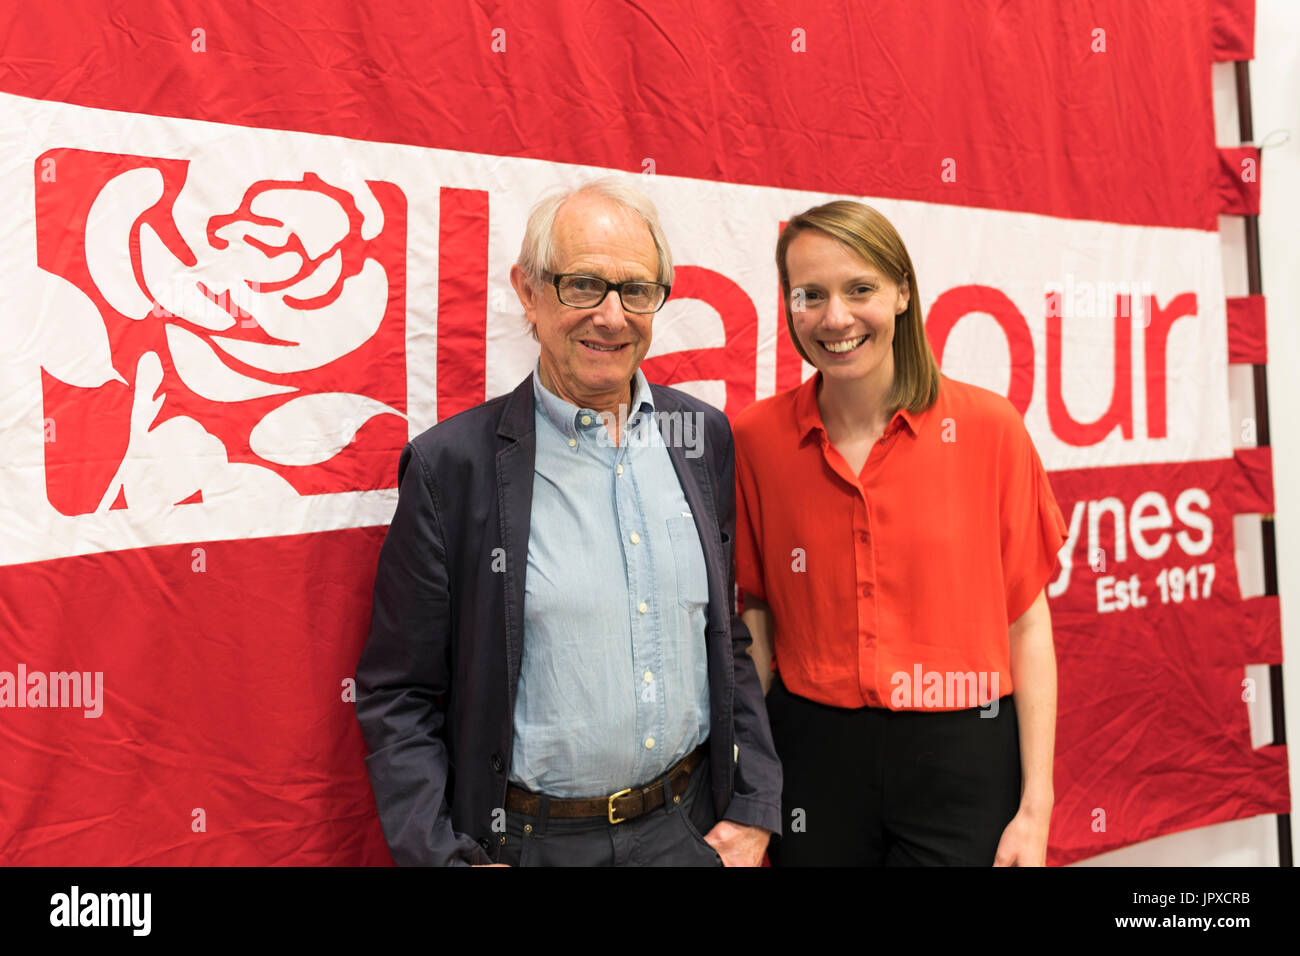 Réalisateur de film avec travail candidat à Milton Keynes South, Hannah O'Neill, au cours de la campagne électorale de 2017 Banque D'Images